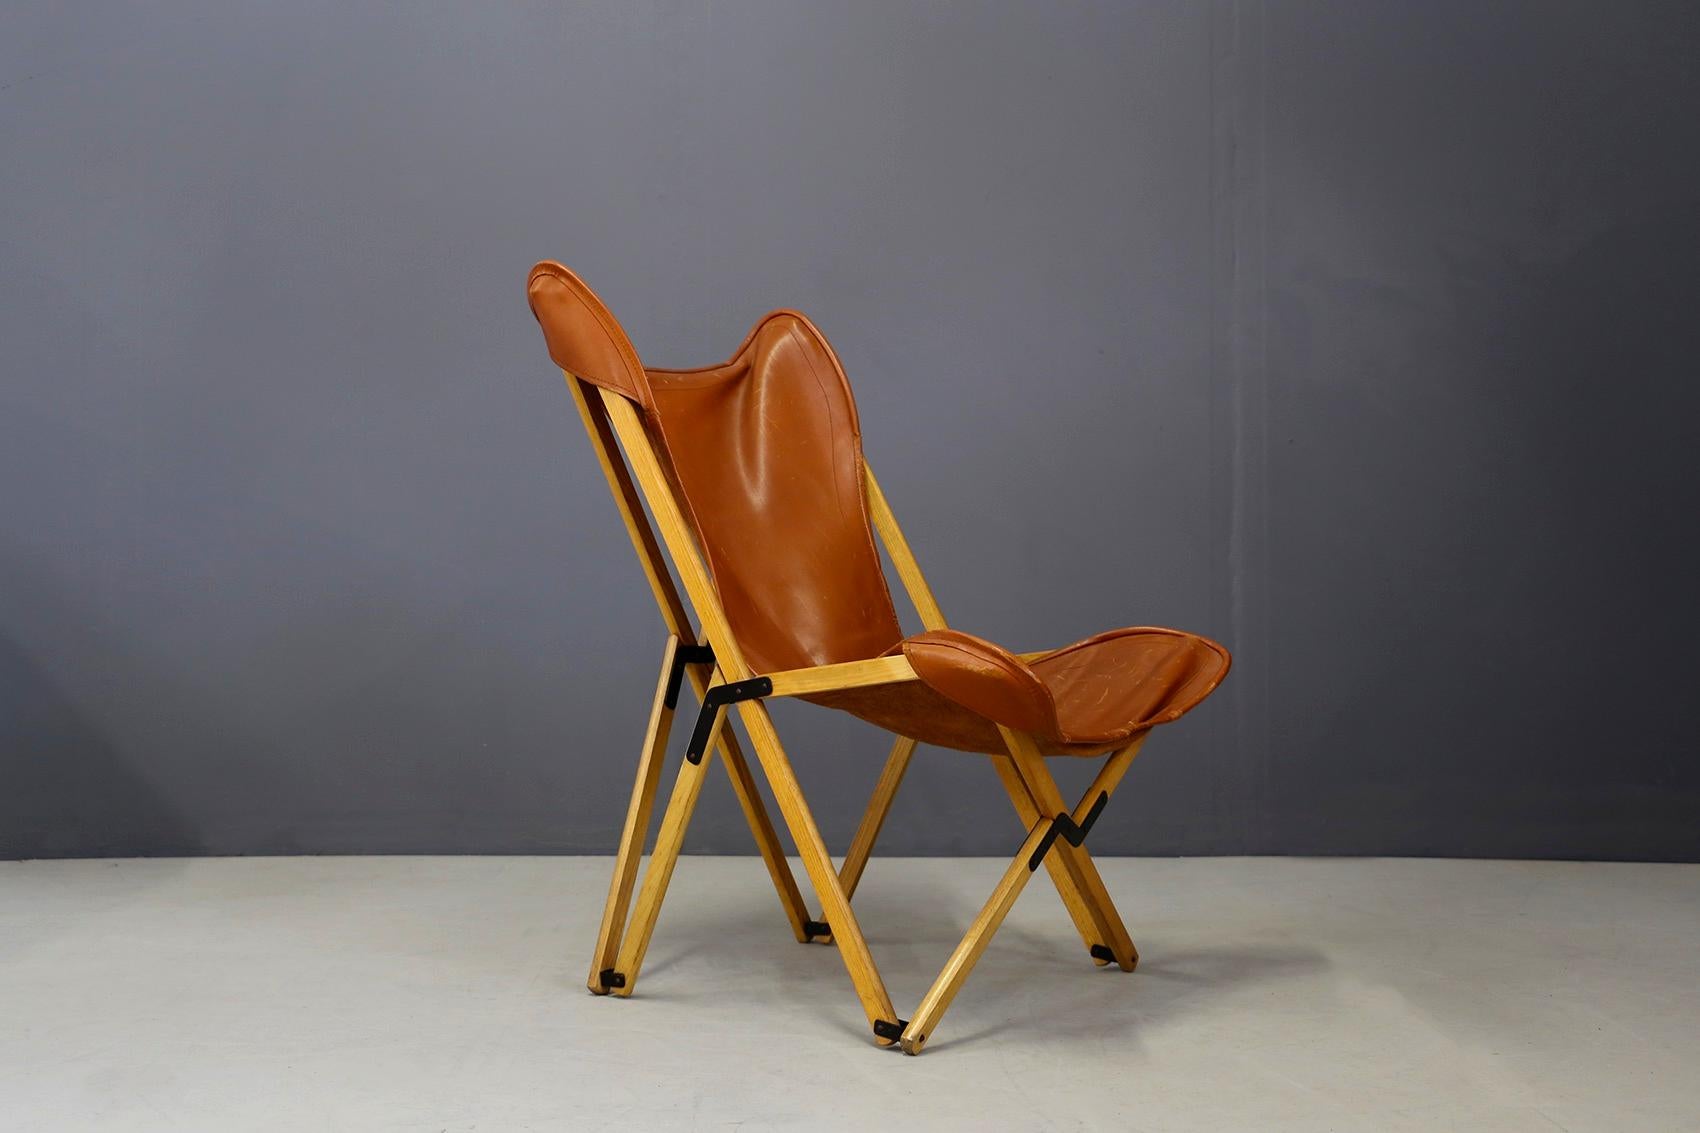 Dieser Klappstuhl von Viganò  basiert auf den Prototypen von Klappstühlen, die im 19. Jahrhundert von J.B. Fendy, der sich seinerseits von traditionellen Berberstühlen inspirieren ließ. Der Tripolina-Stuhl wurde vor dem Zweiten Weltkrieg von der